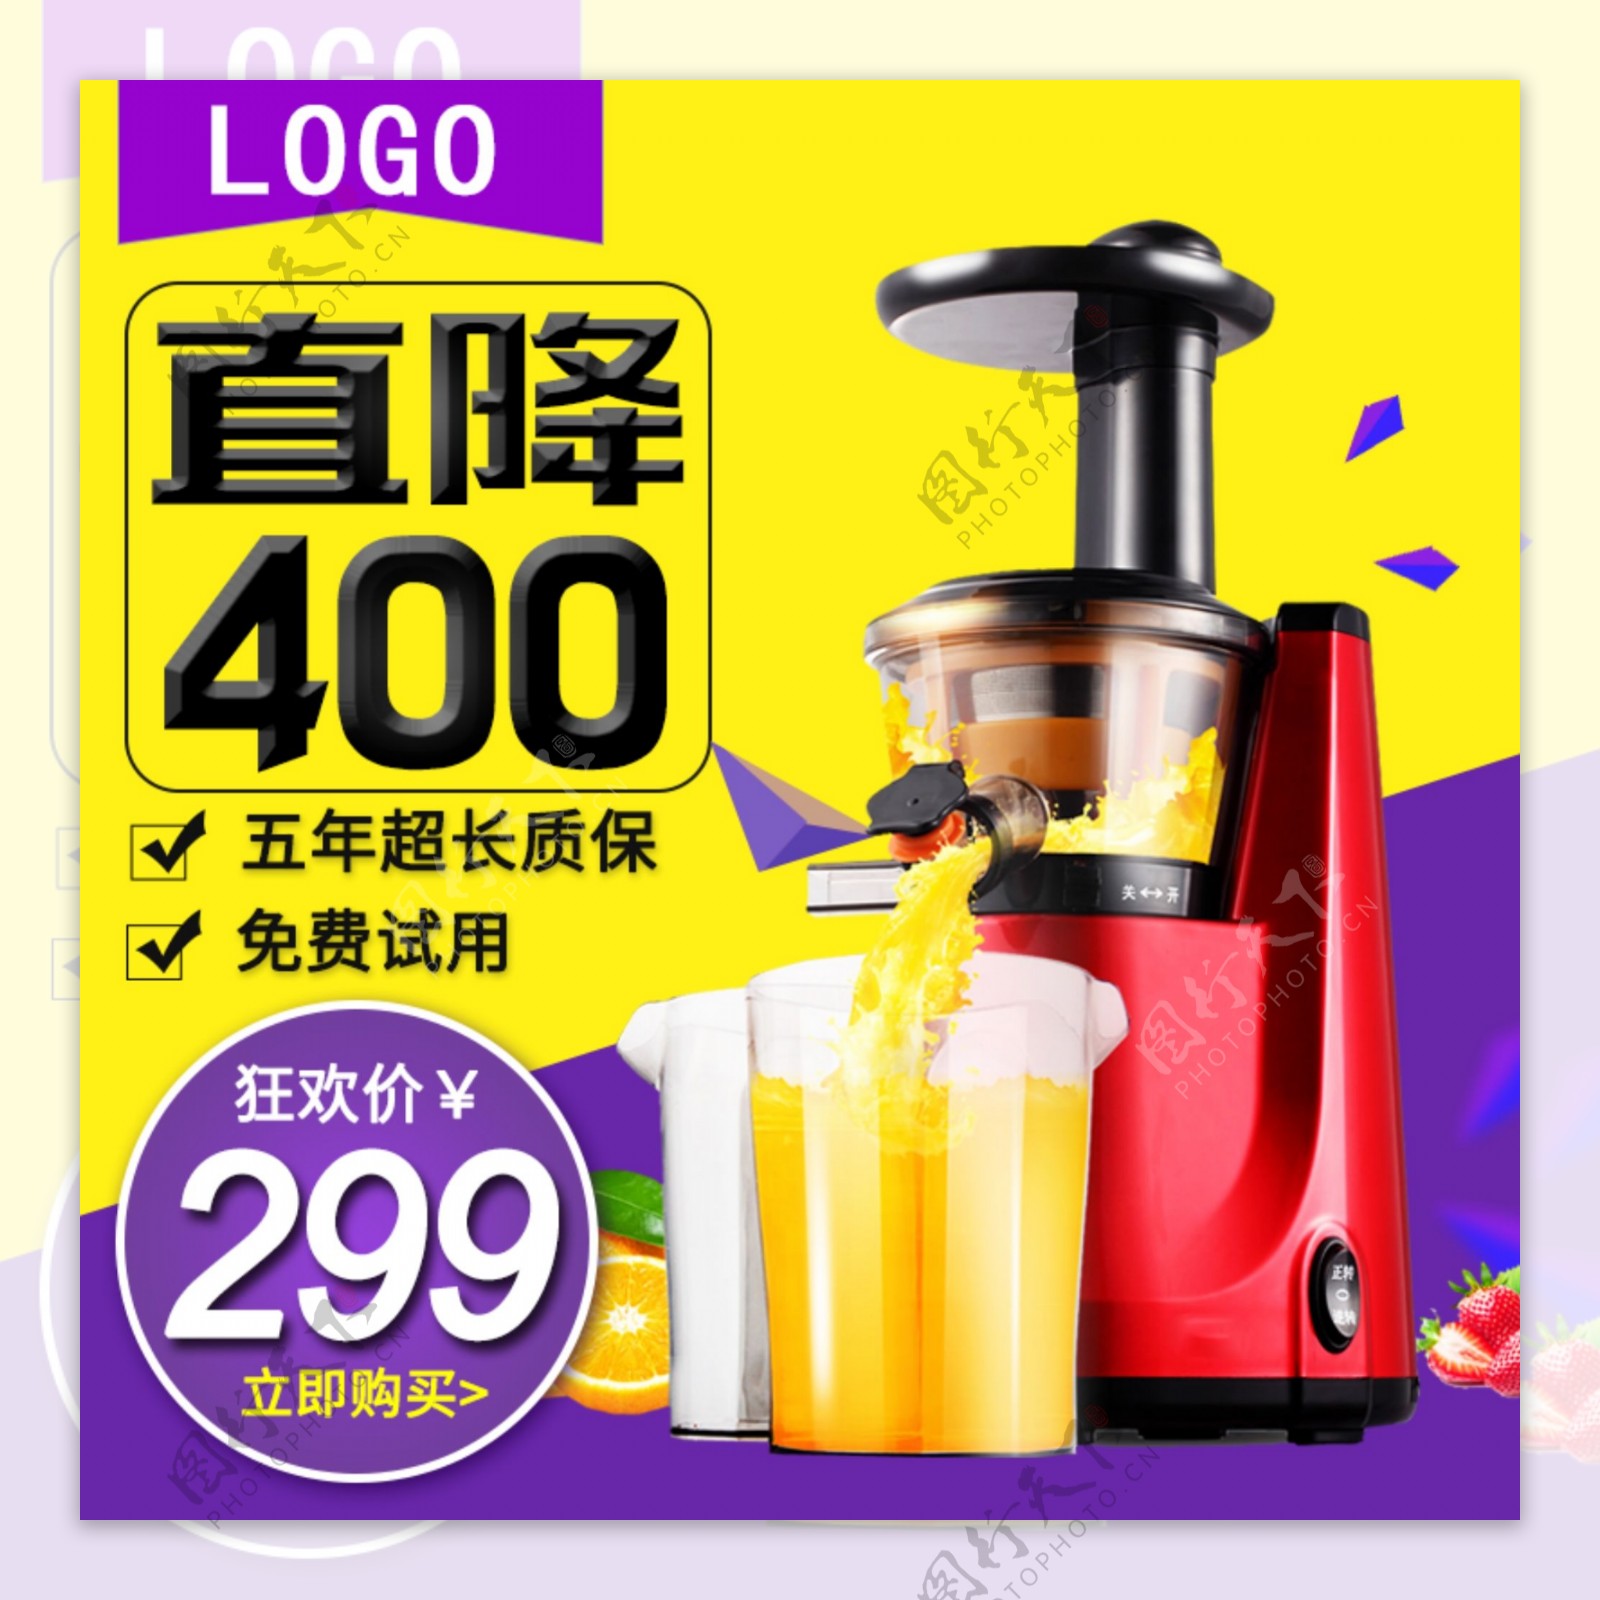 黄紫色背景果汁机降价促销直通车PSD模板